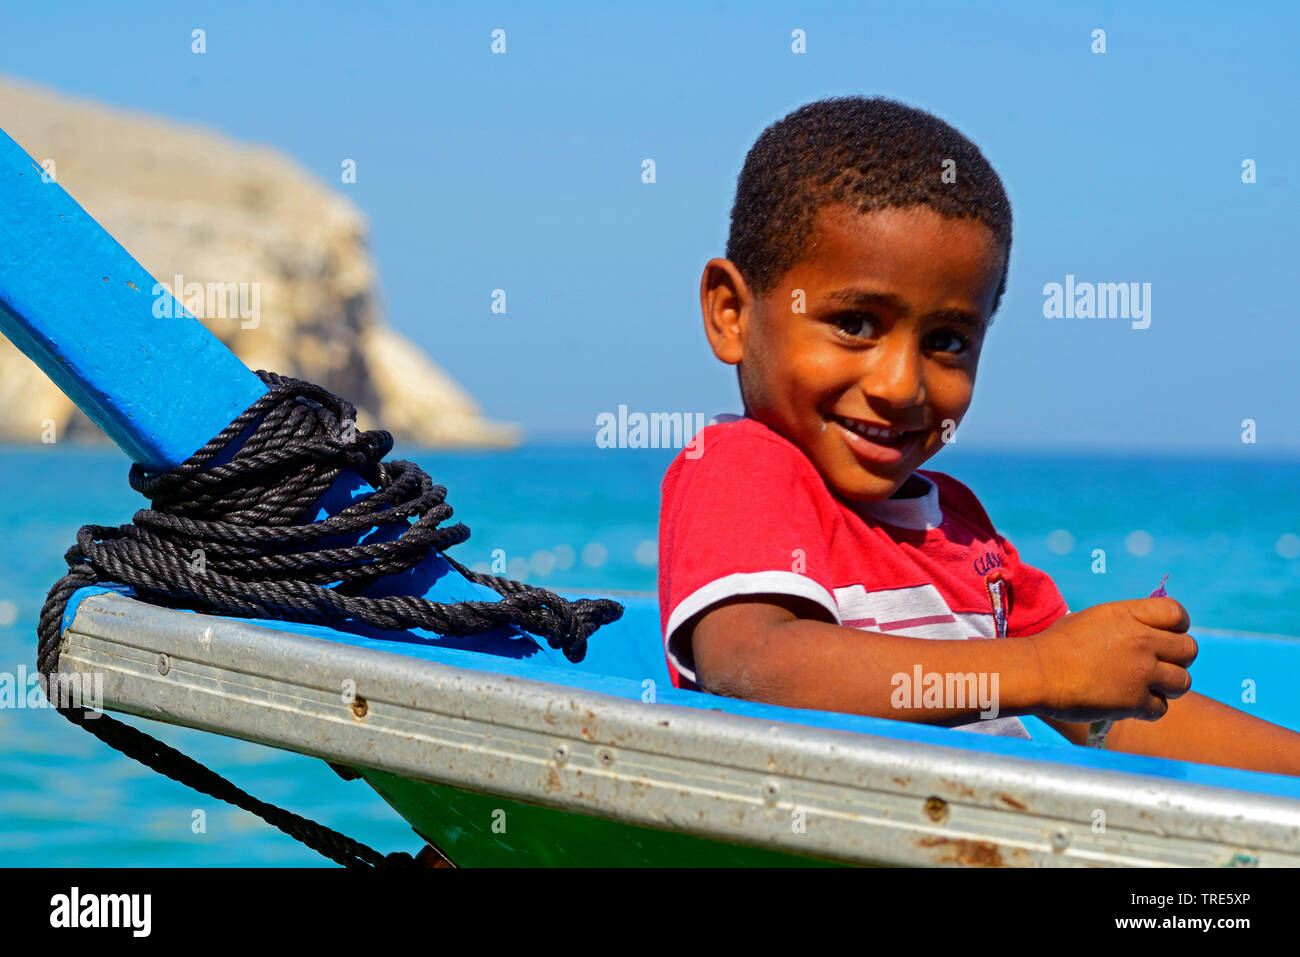 Jeune pêcheur garçon dans un bateau, Oman, Khasab Banque D'Images